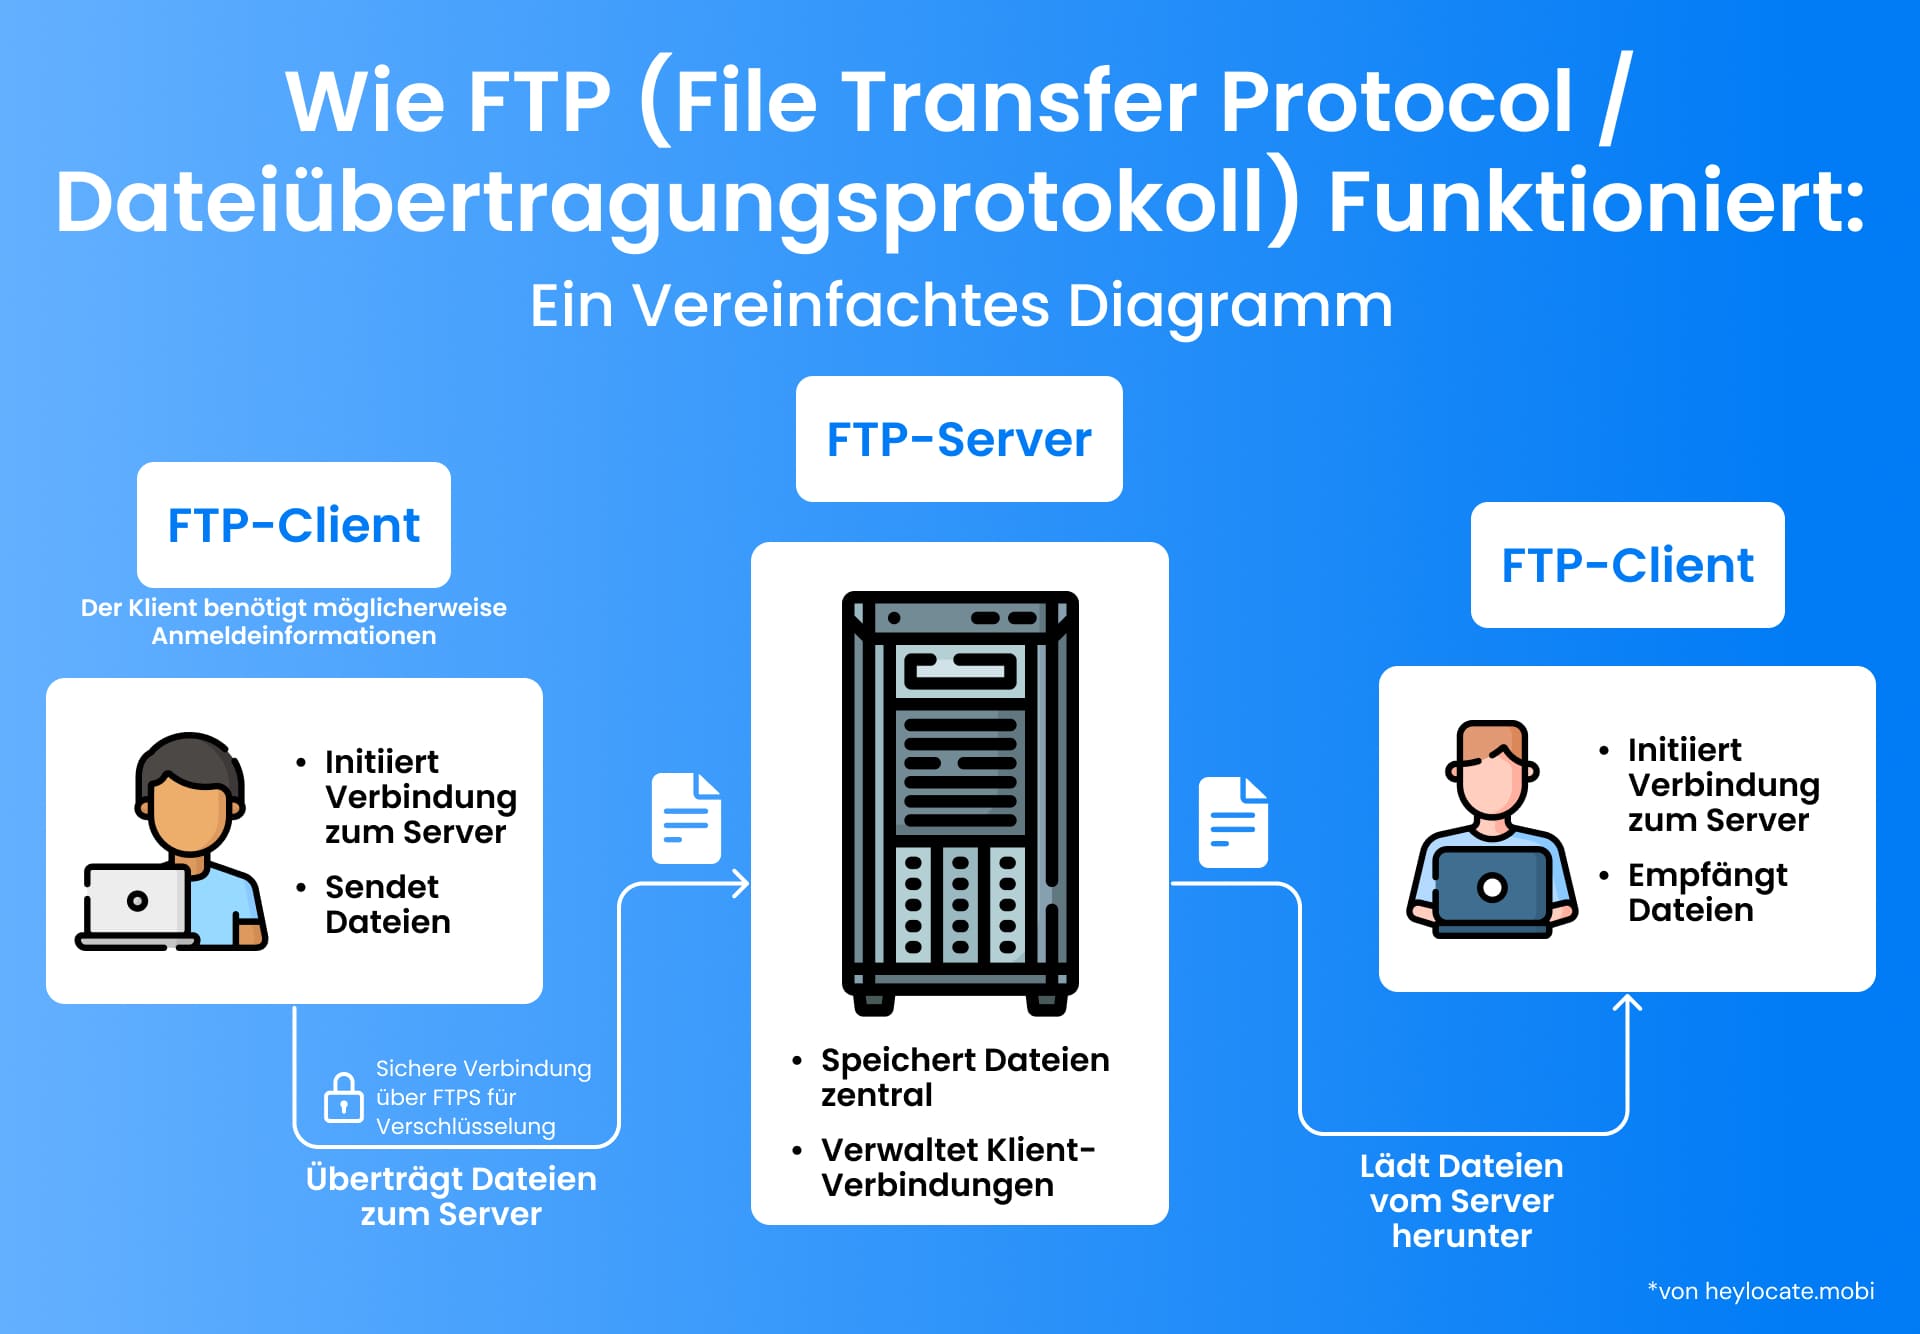 Eine Illustration, wie FTP funktioniert, zeigt, wie ein FTP-Client Dateien durch einen zentralen FTP-Server sendet und ein anderer FTP-Client sie empfängt